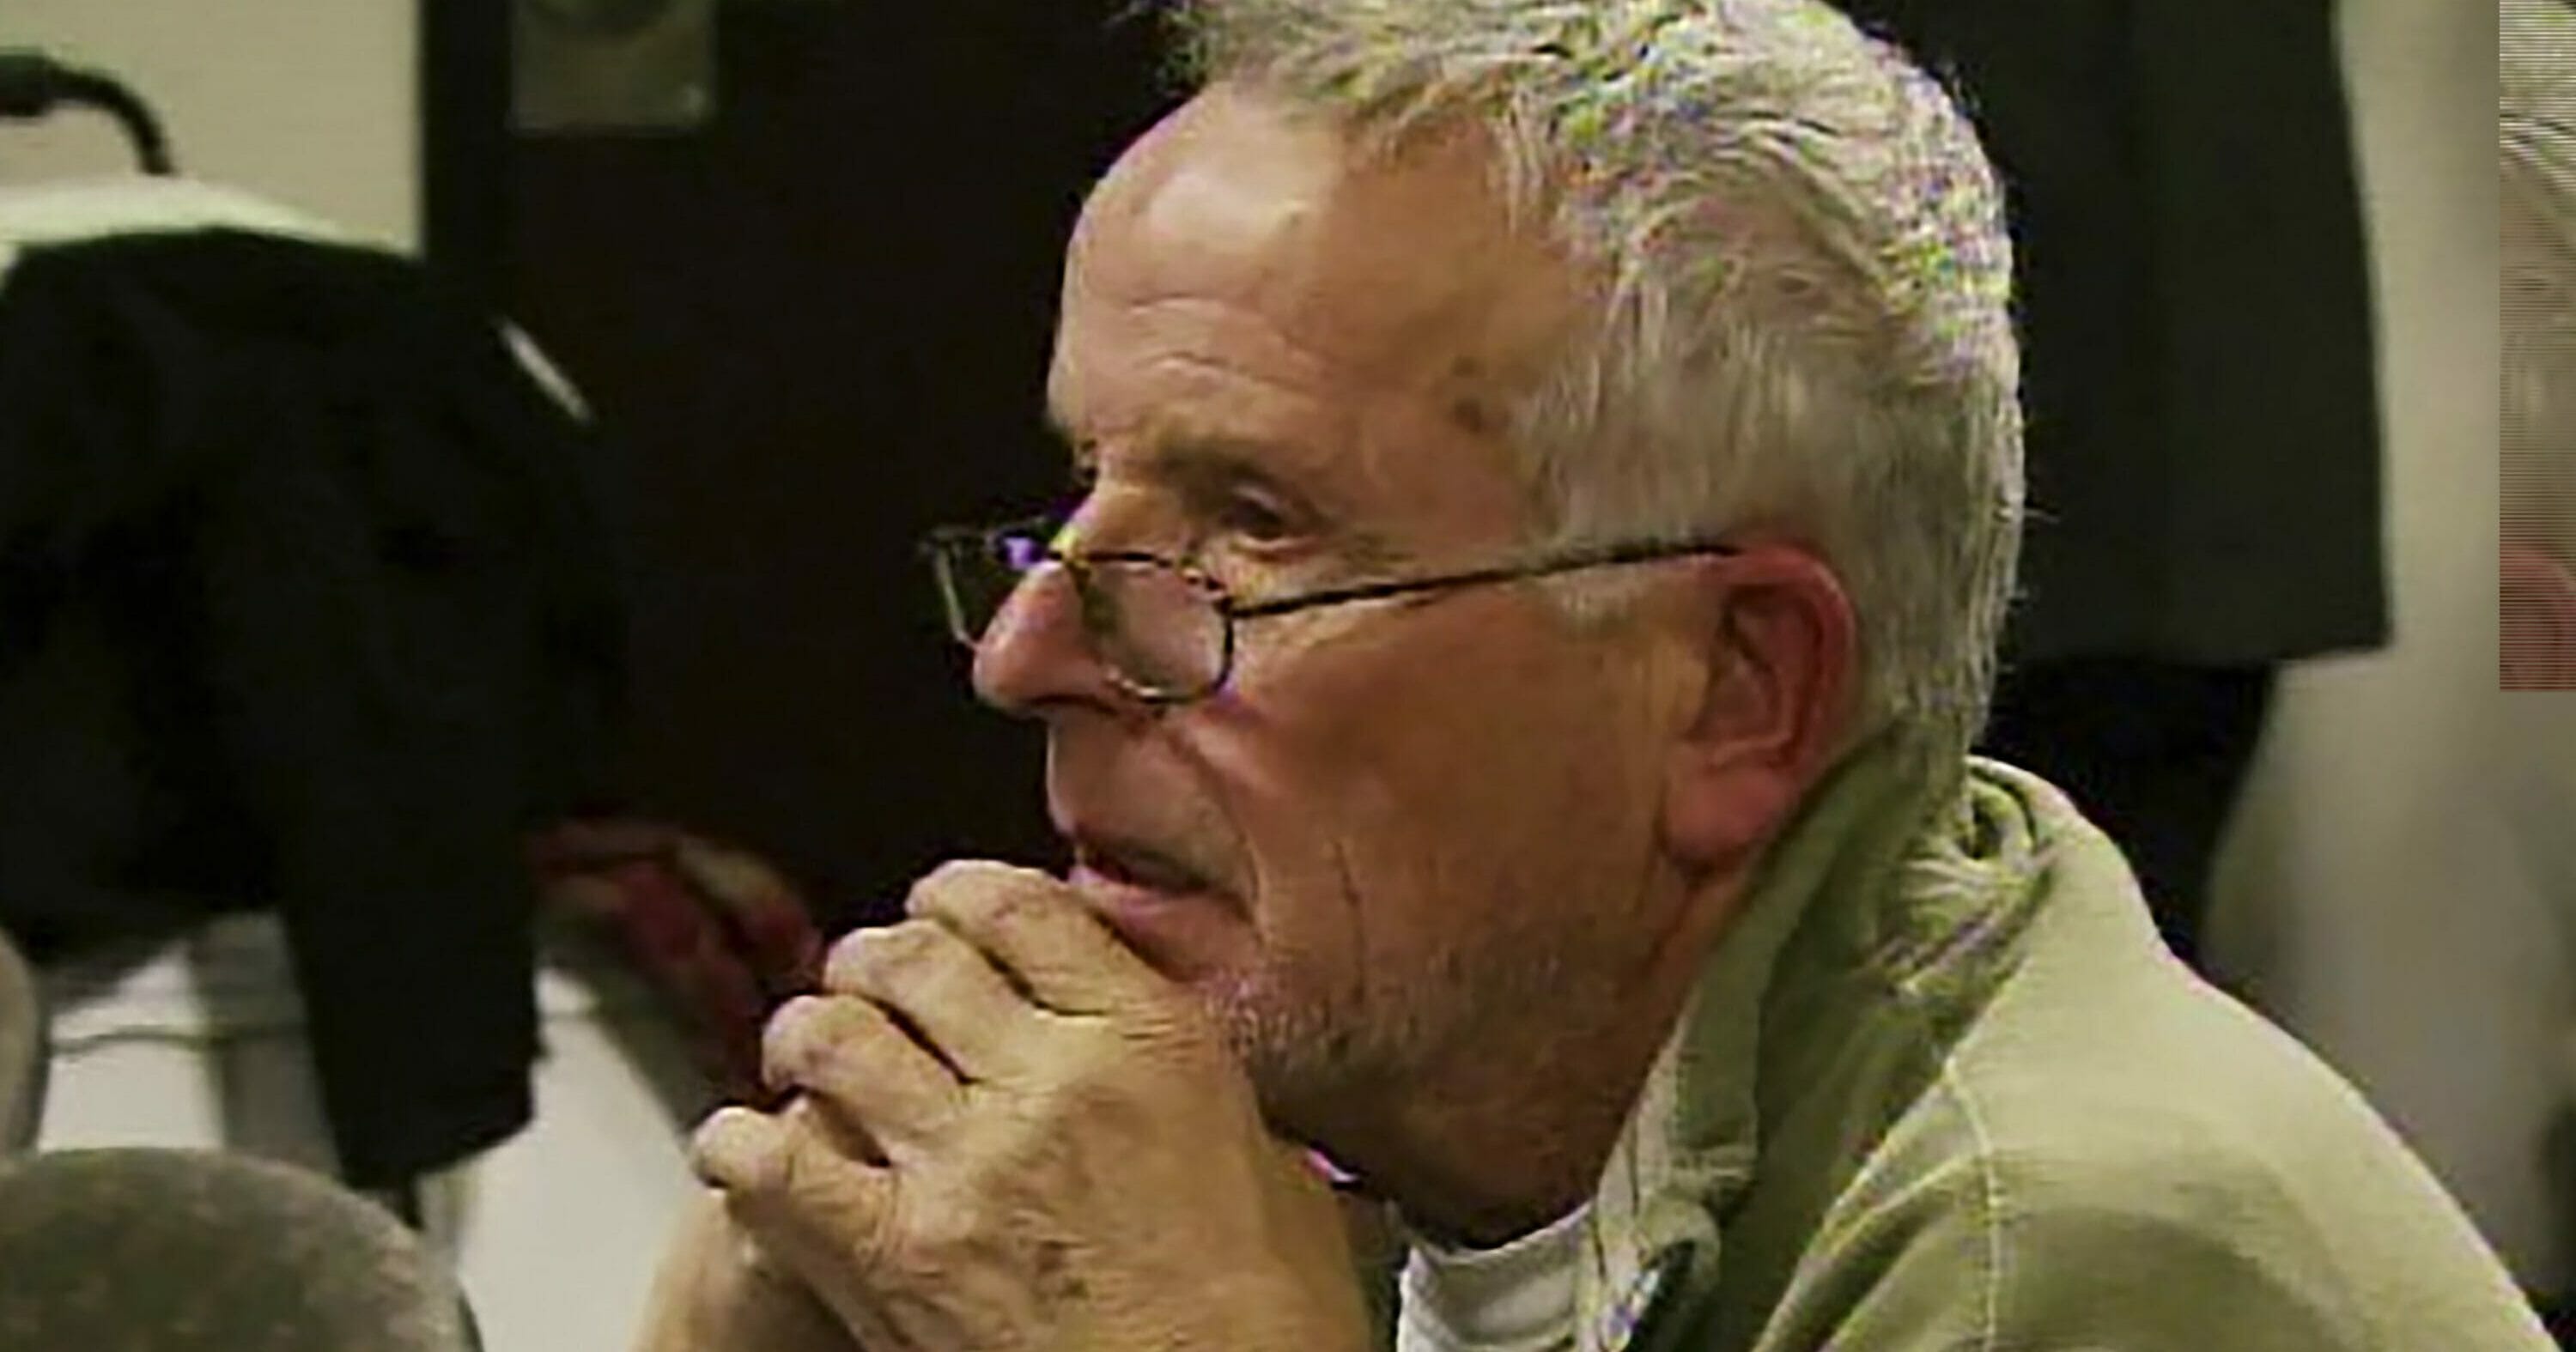 Dr. Ulrich Klopfer